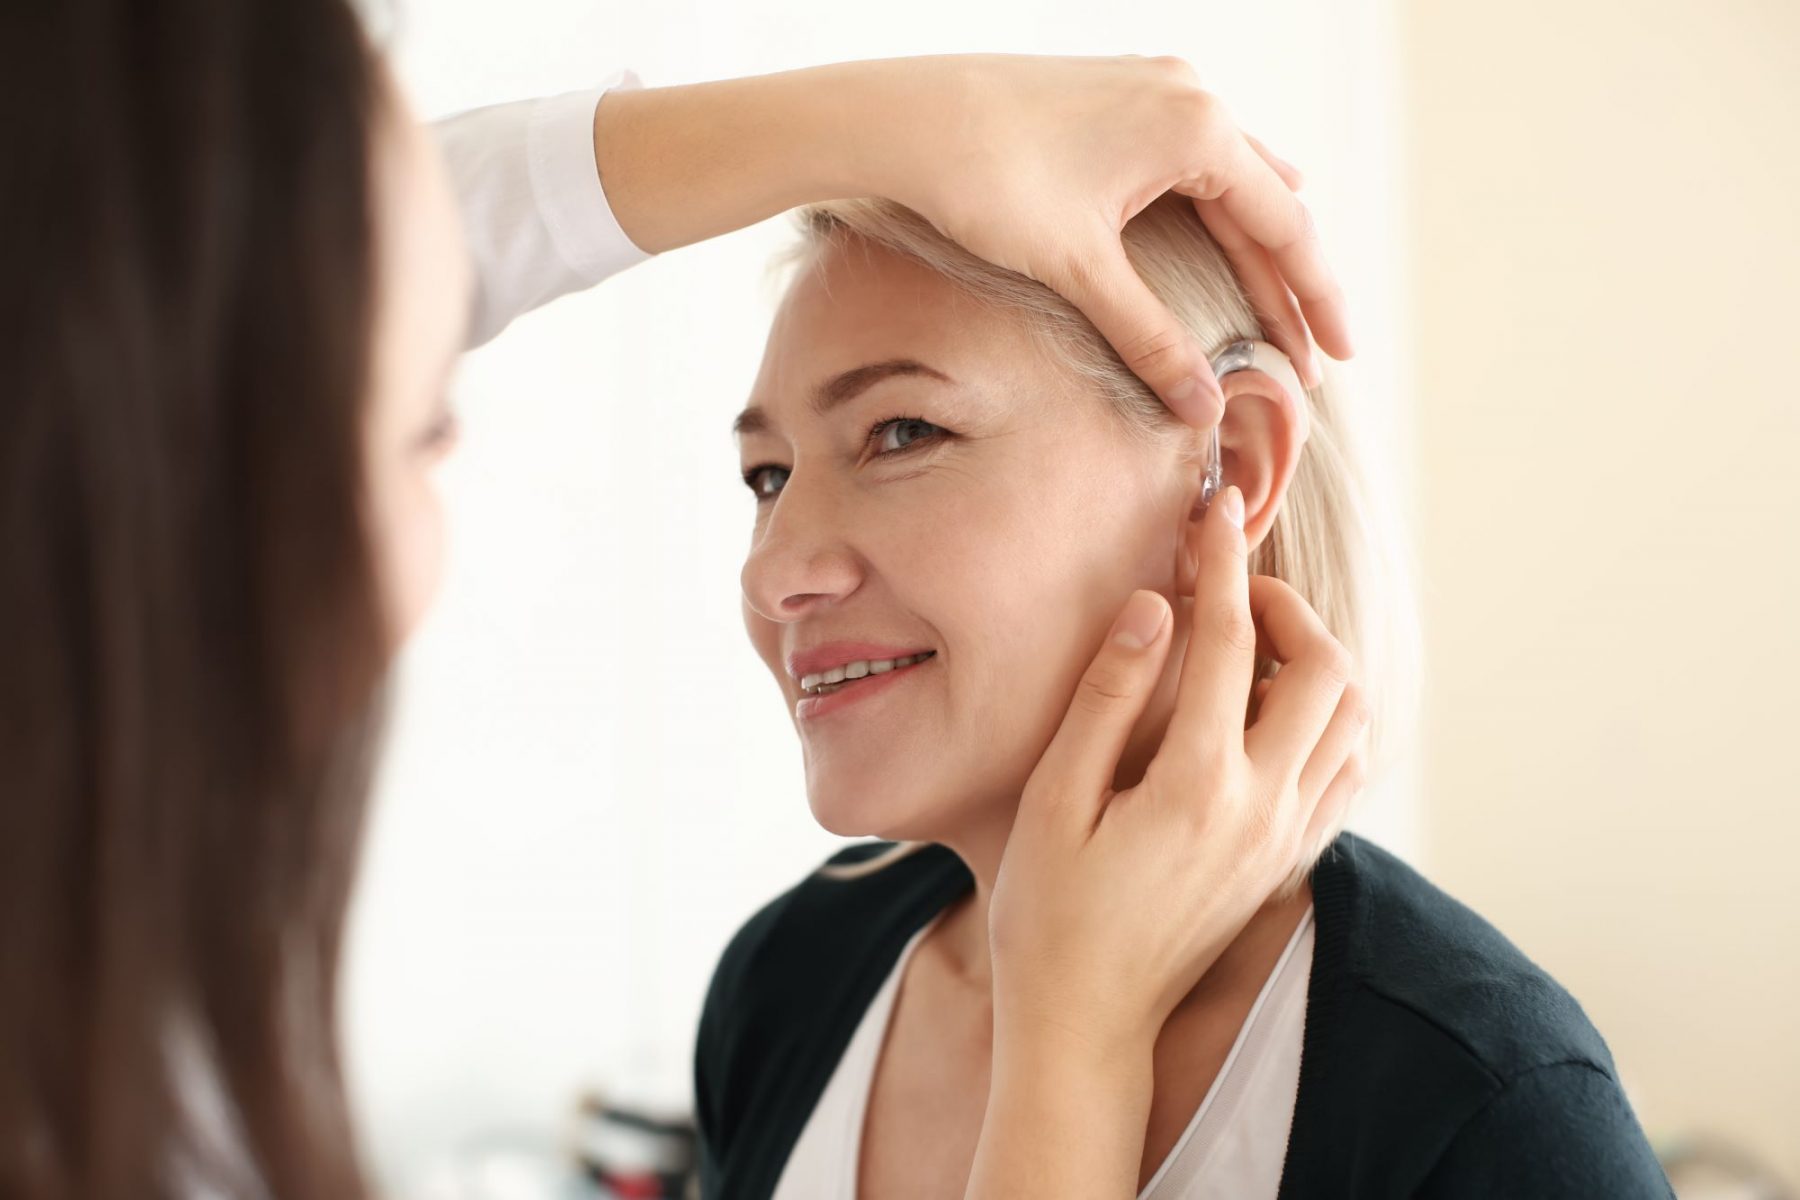 Απώλεια ακοής ΗΠΑ: Περισσότερες γυναίκες διατηρούν την ακοή τους σε προχωρημένη ηλικία